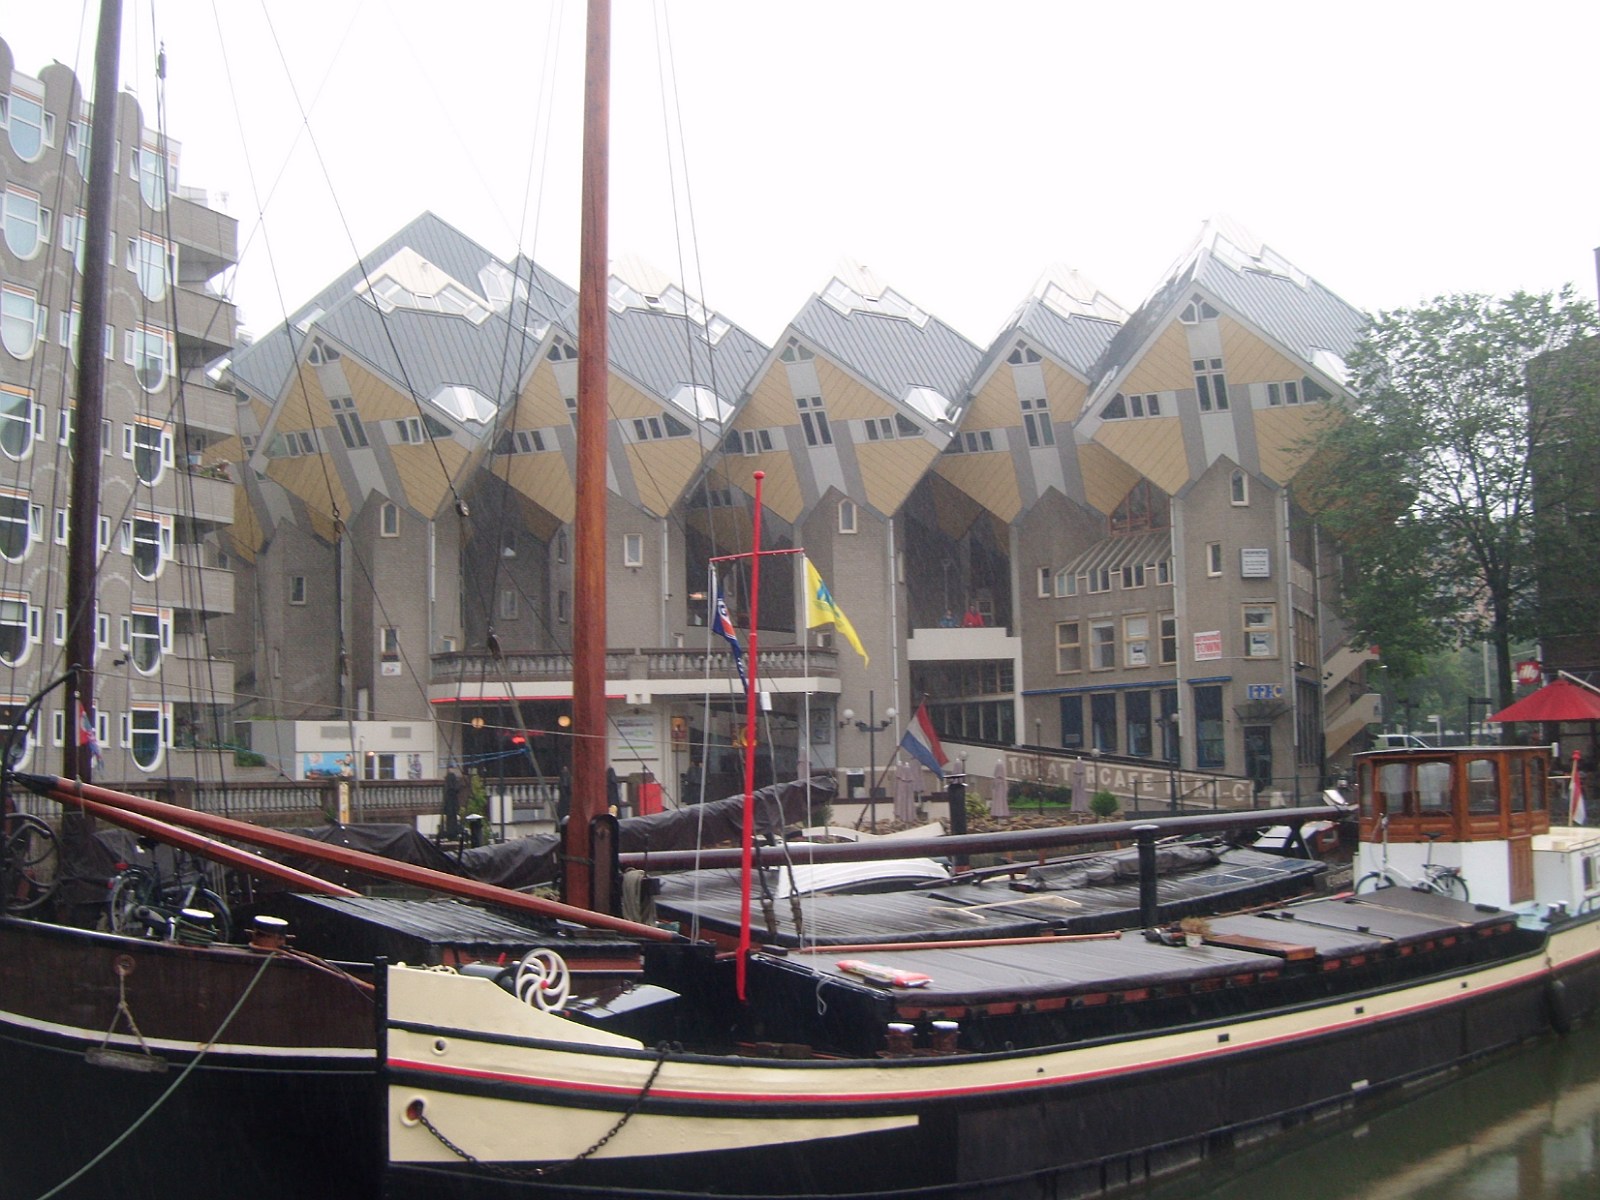 19. 'Kubuswoningen' - domy o kształcie sześcianu w Rotterdamie.